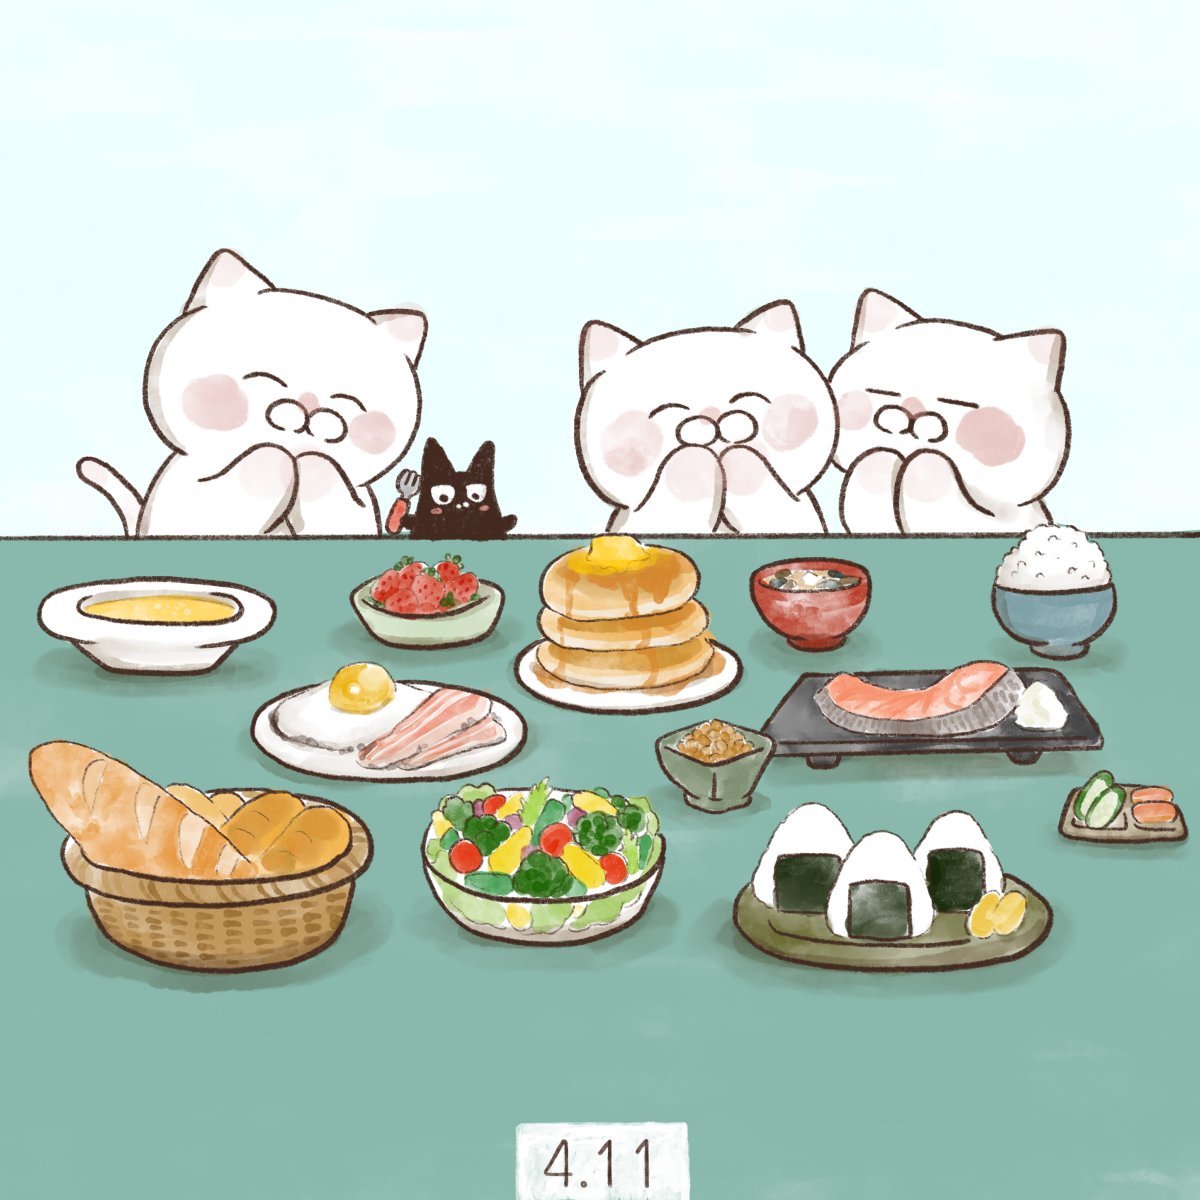 「4月11日
【 しっかりいい朝食の日 】

「し(4)っかりいい(11)朝食」の」|大和猫のイラスト